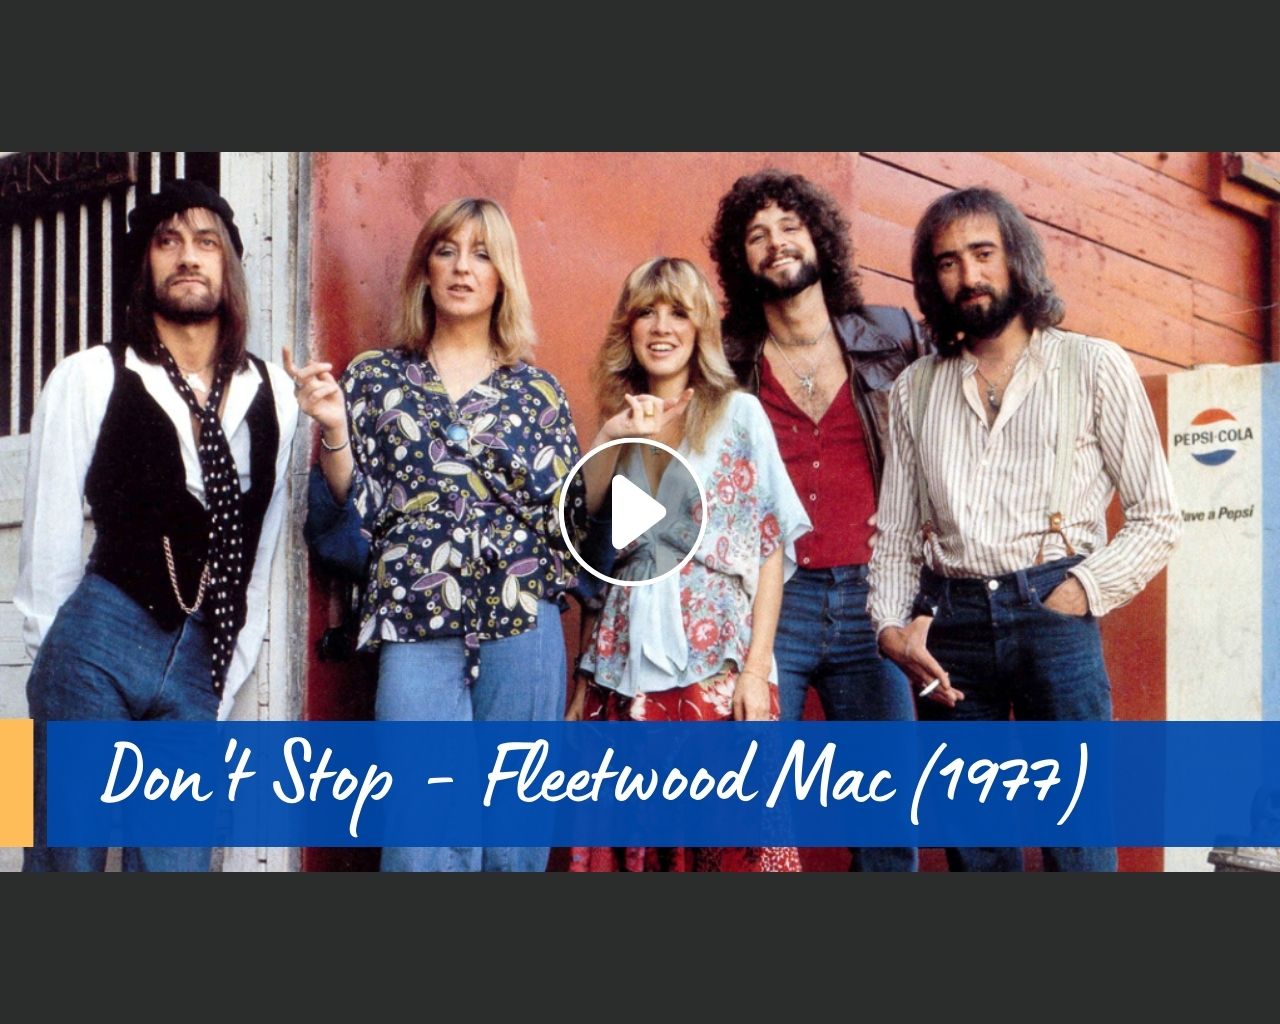 Fleetwood Mac - Don't Stop